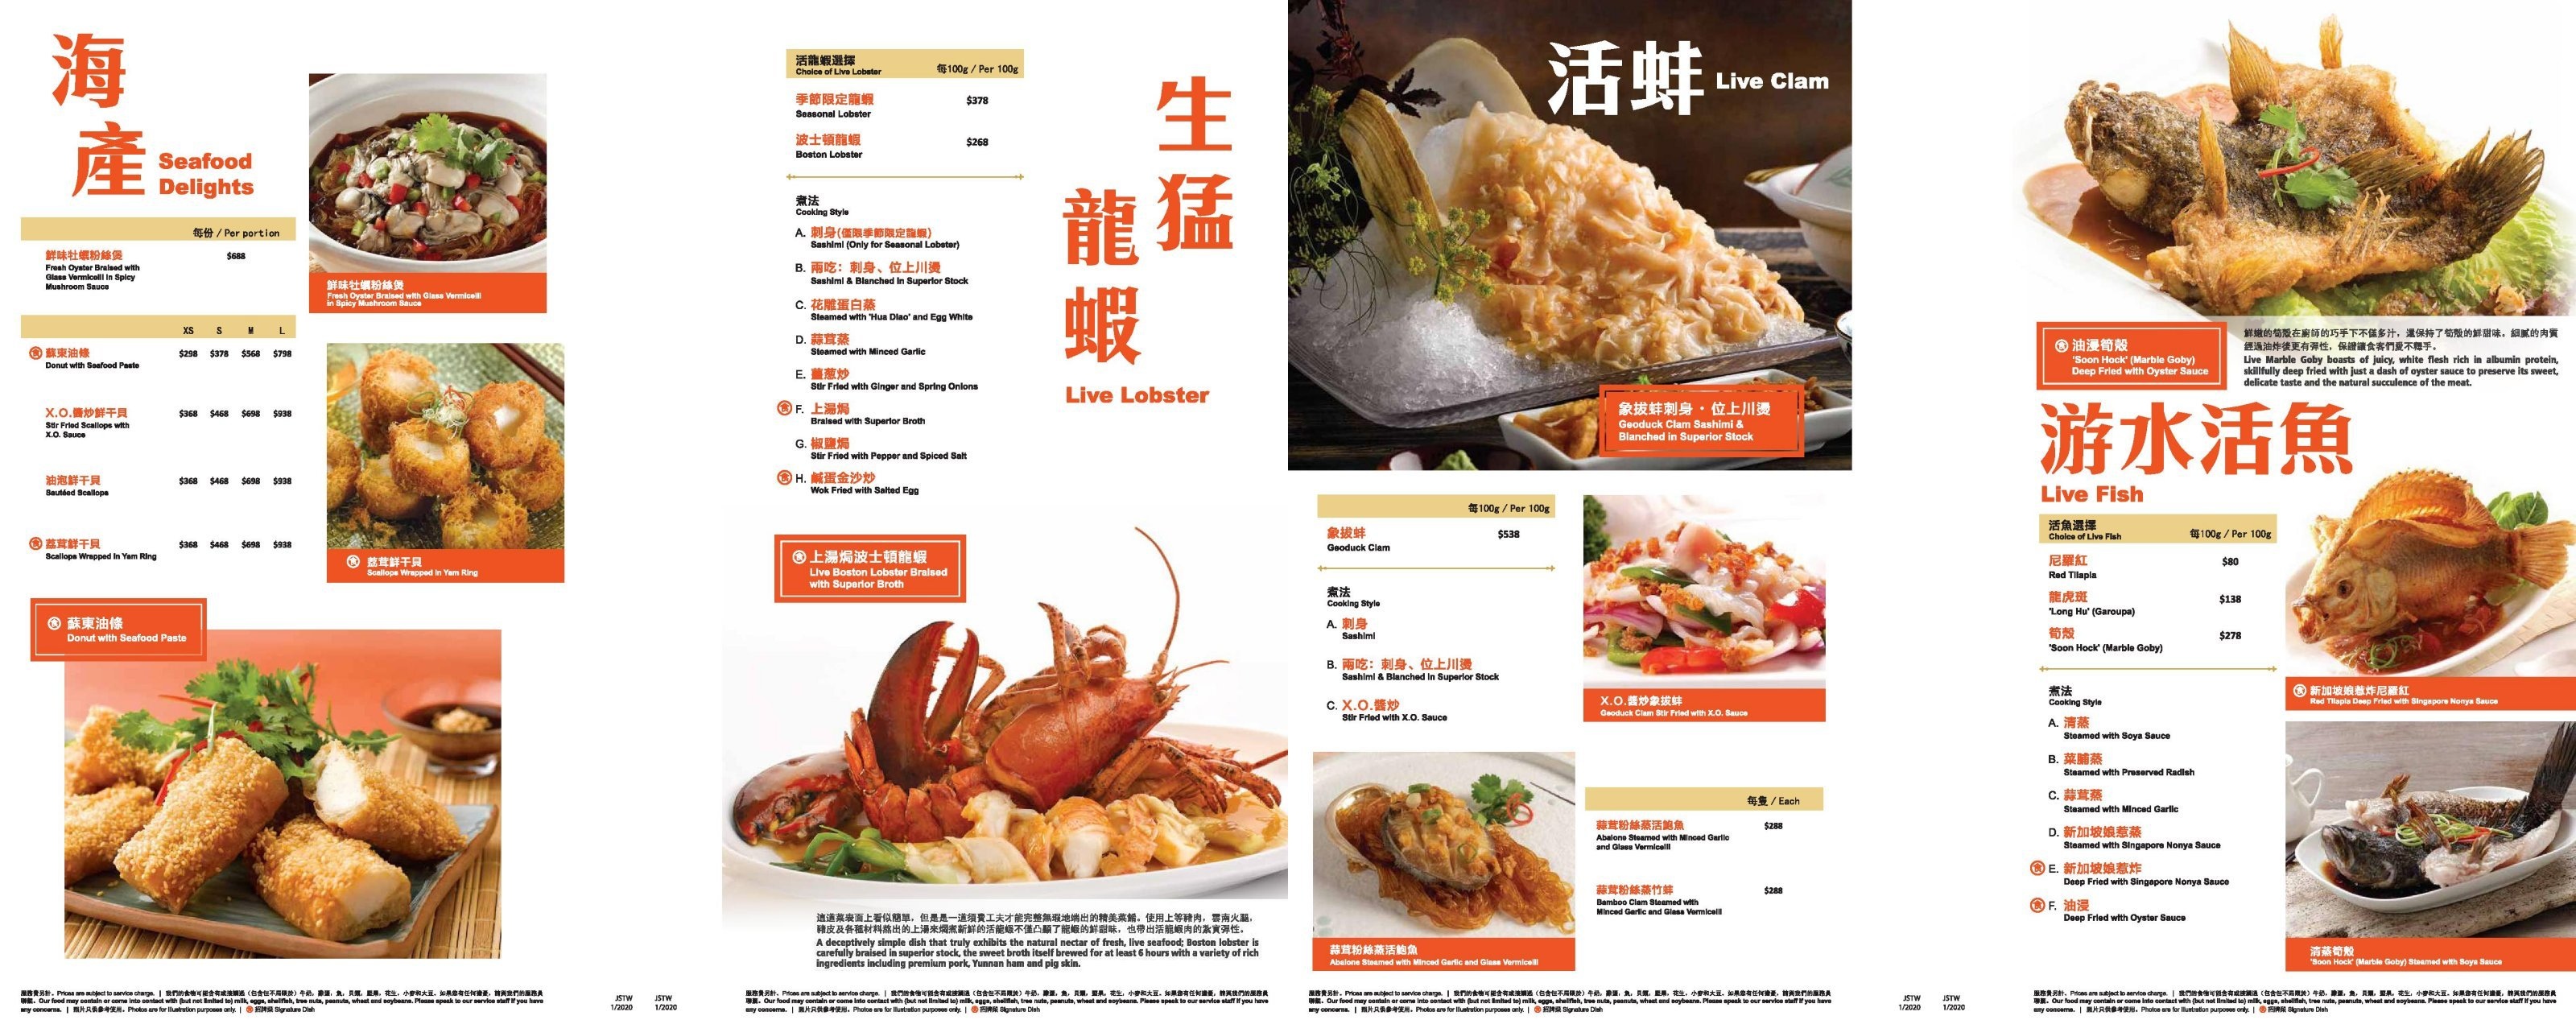 台中美食 | 珍寶海鮮Jumbo Seafood | 新加坡招牌辣椒蟹台灣吃得到 @巧莉的世界流浪筆記